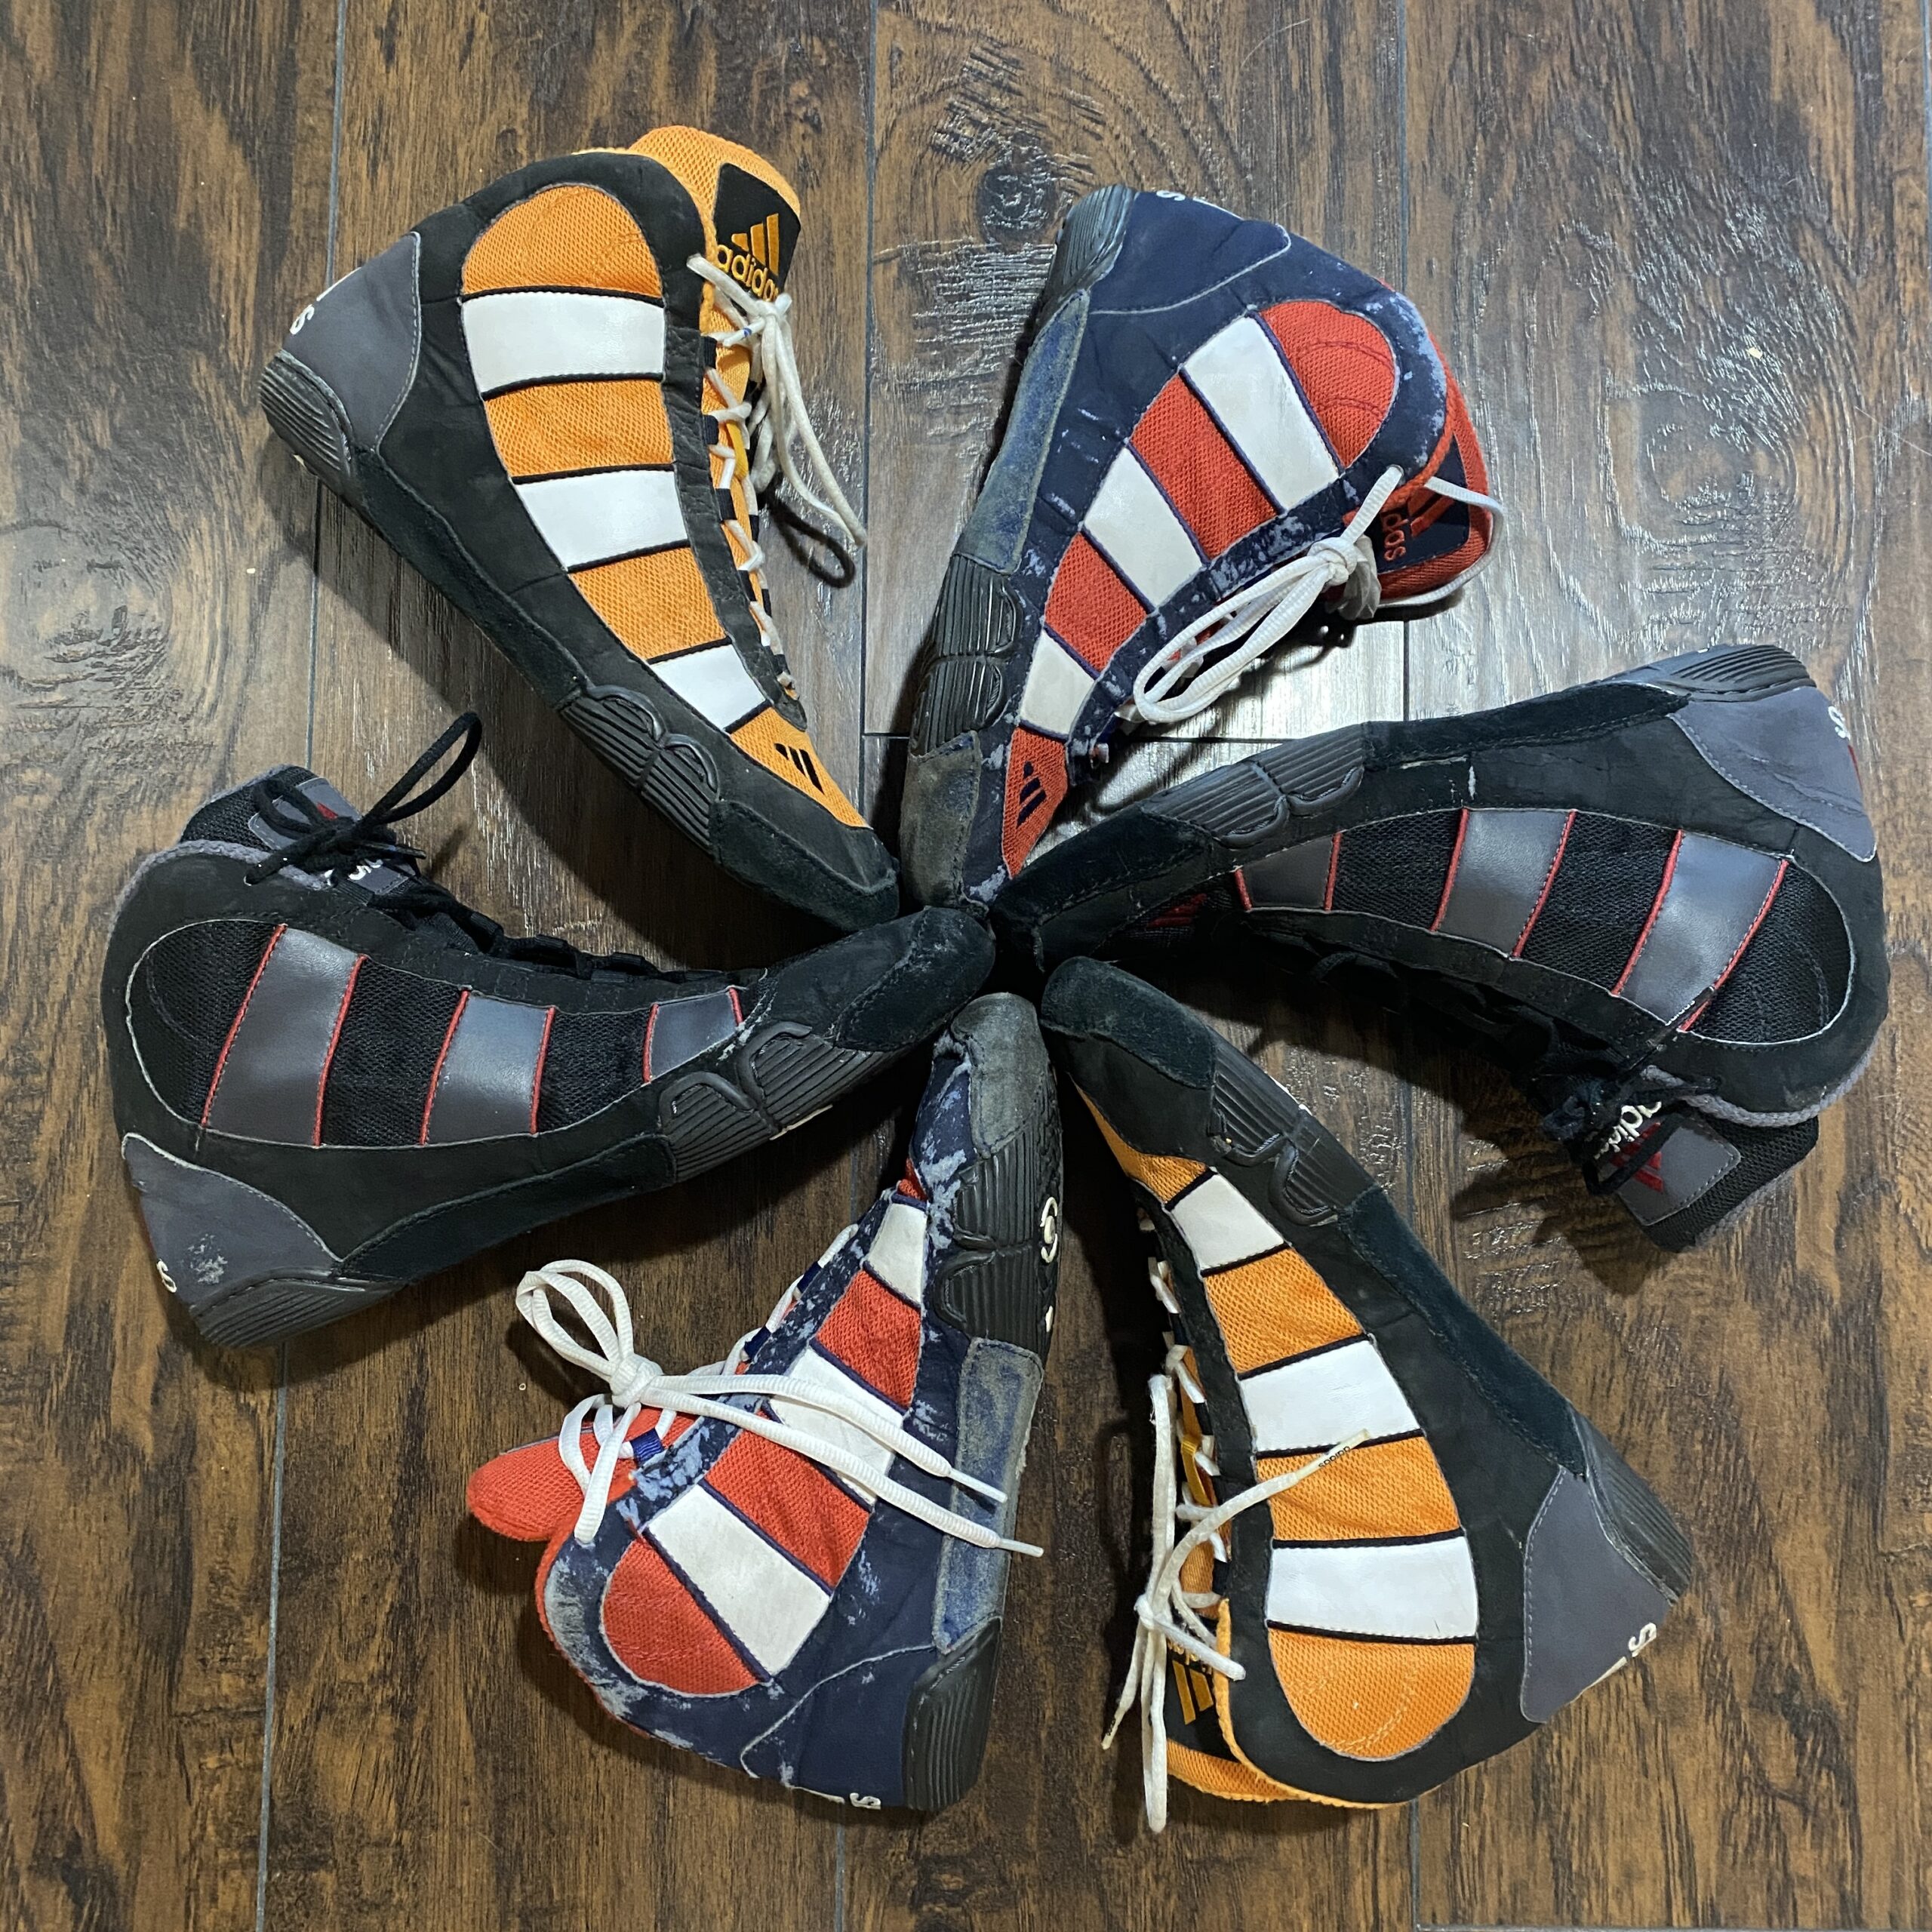 Adidas Orange, White, and Black G-Response Wrestling Shoes